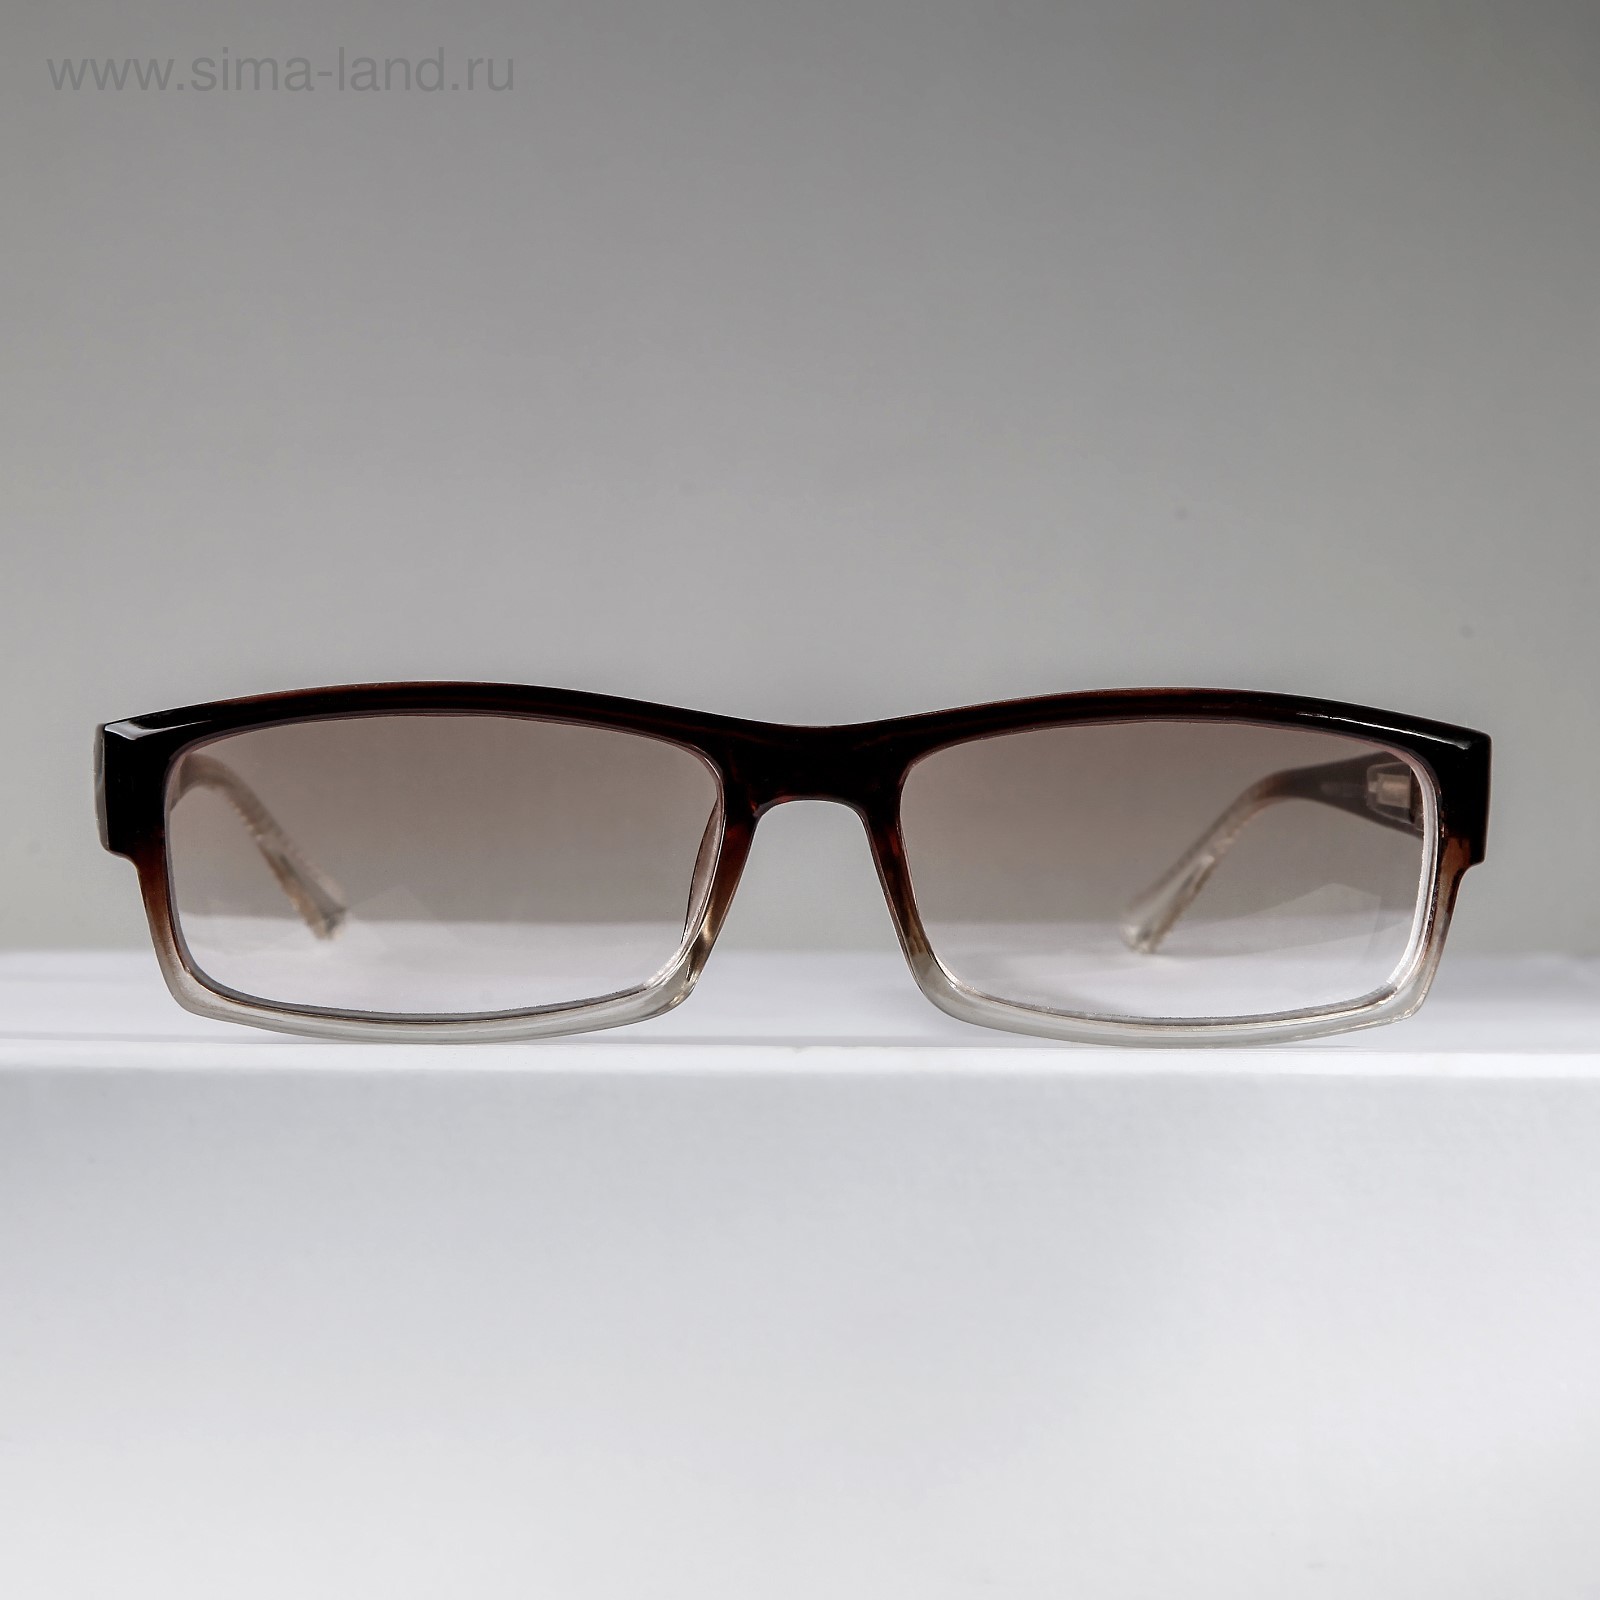 Корригирующие очки Восток тонированное 6616 коричневый